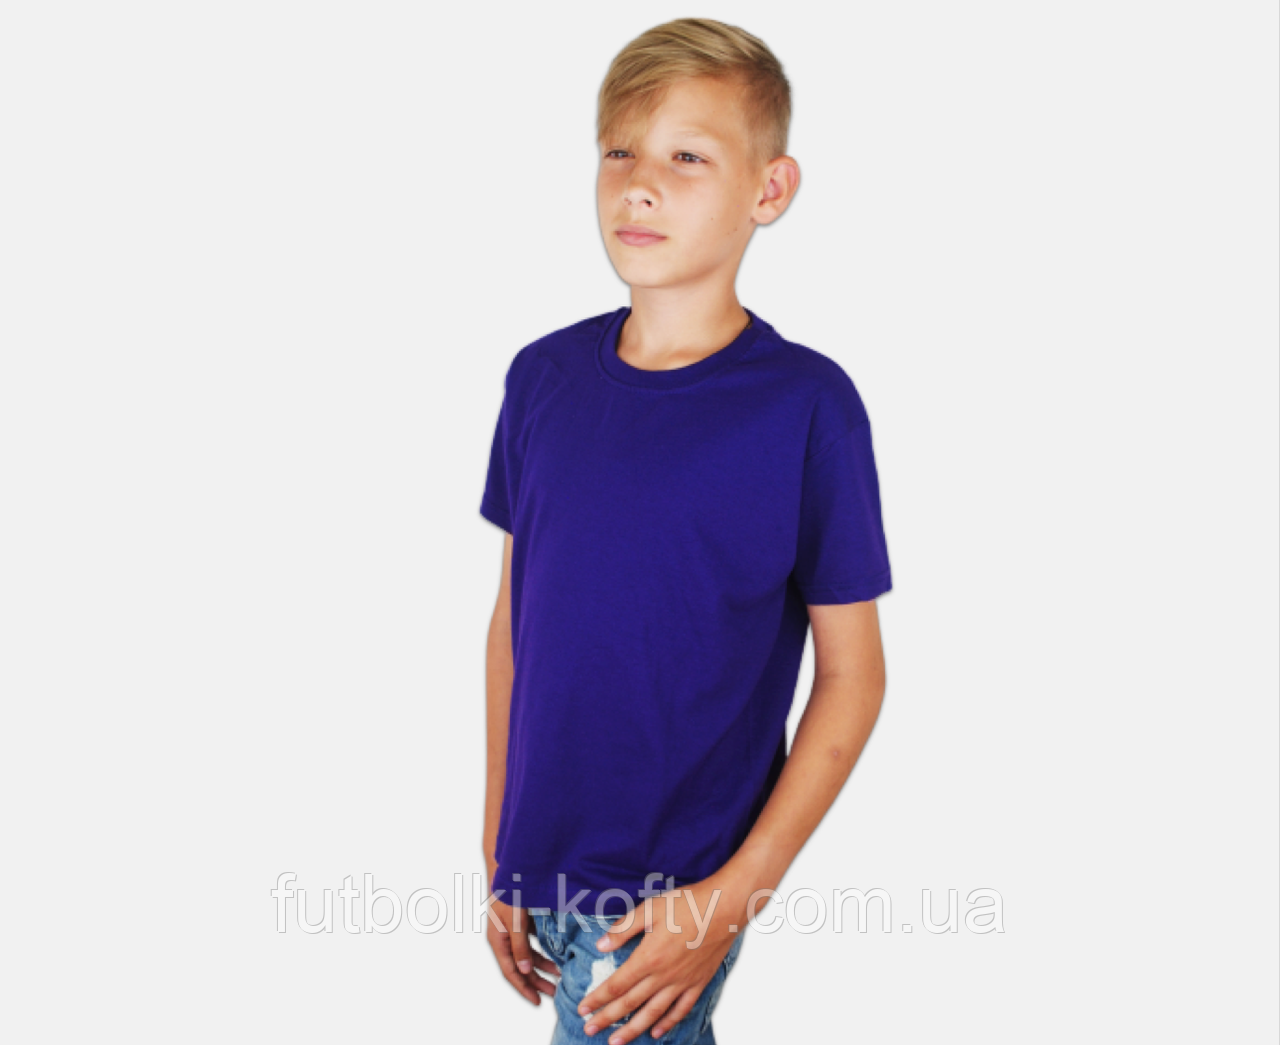 Дитяча Класична футболка для хлопчиків Фіолетова Fruit of the loom 61-033-PE 9-11